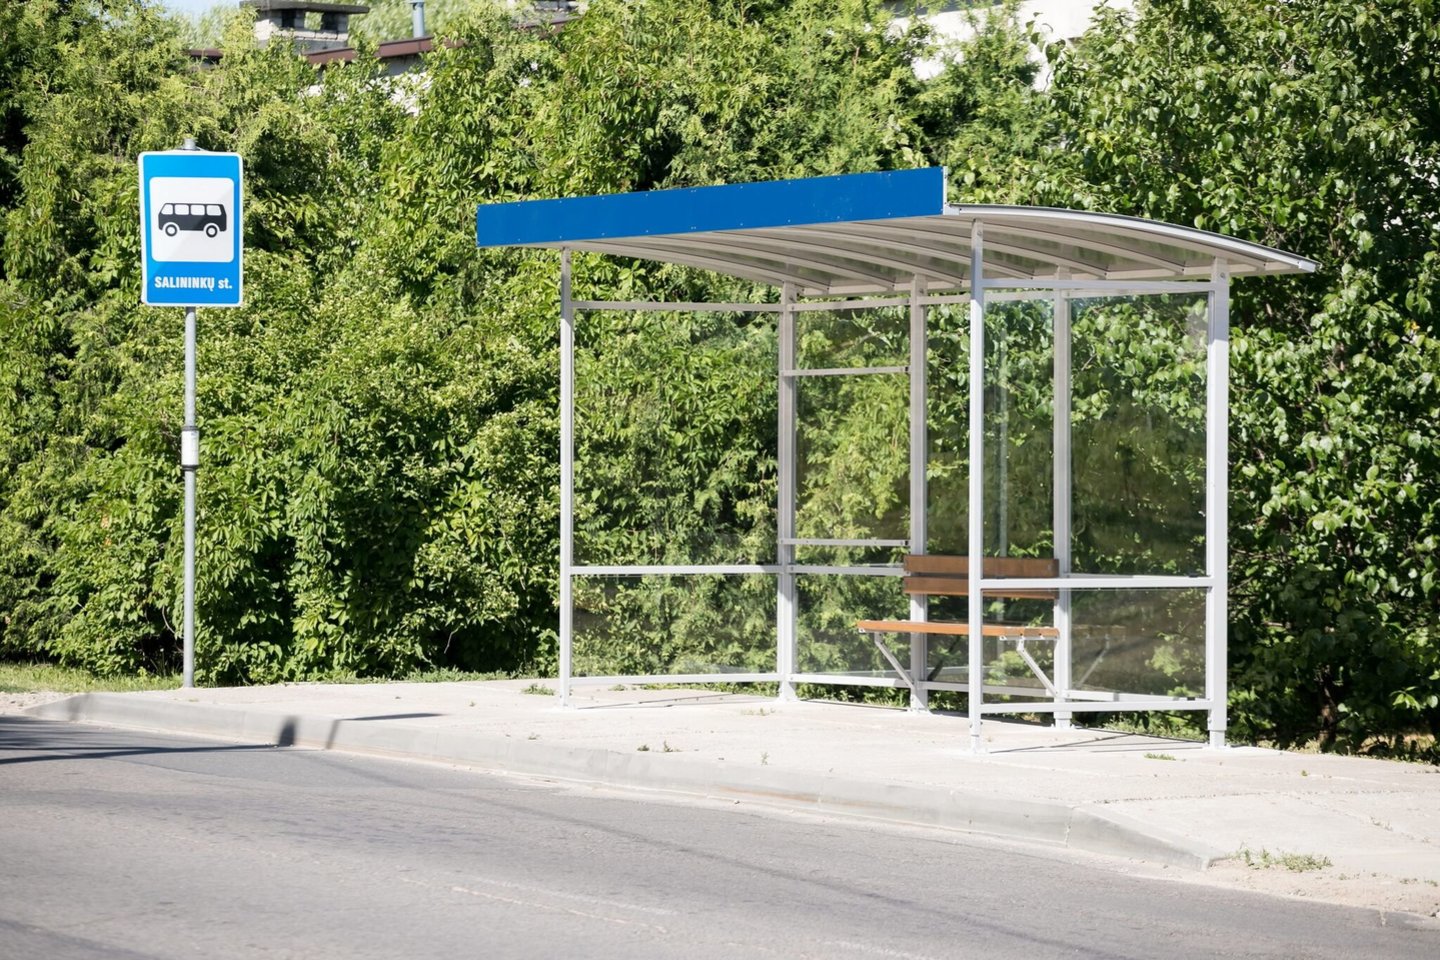 Birželio mėnesį septyniose viešojo transporto stotelėse bus įrengti nauji paviljonai.<br> Sauliaus Žiūros nuotr.